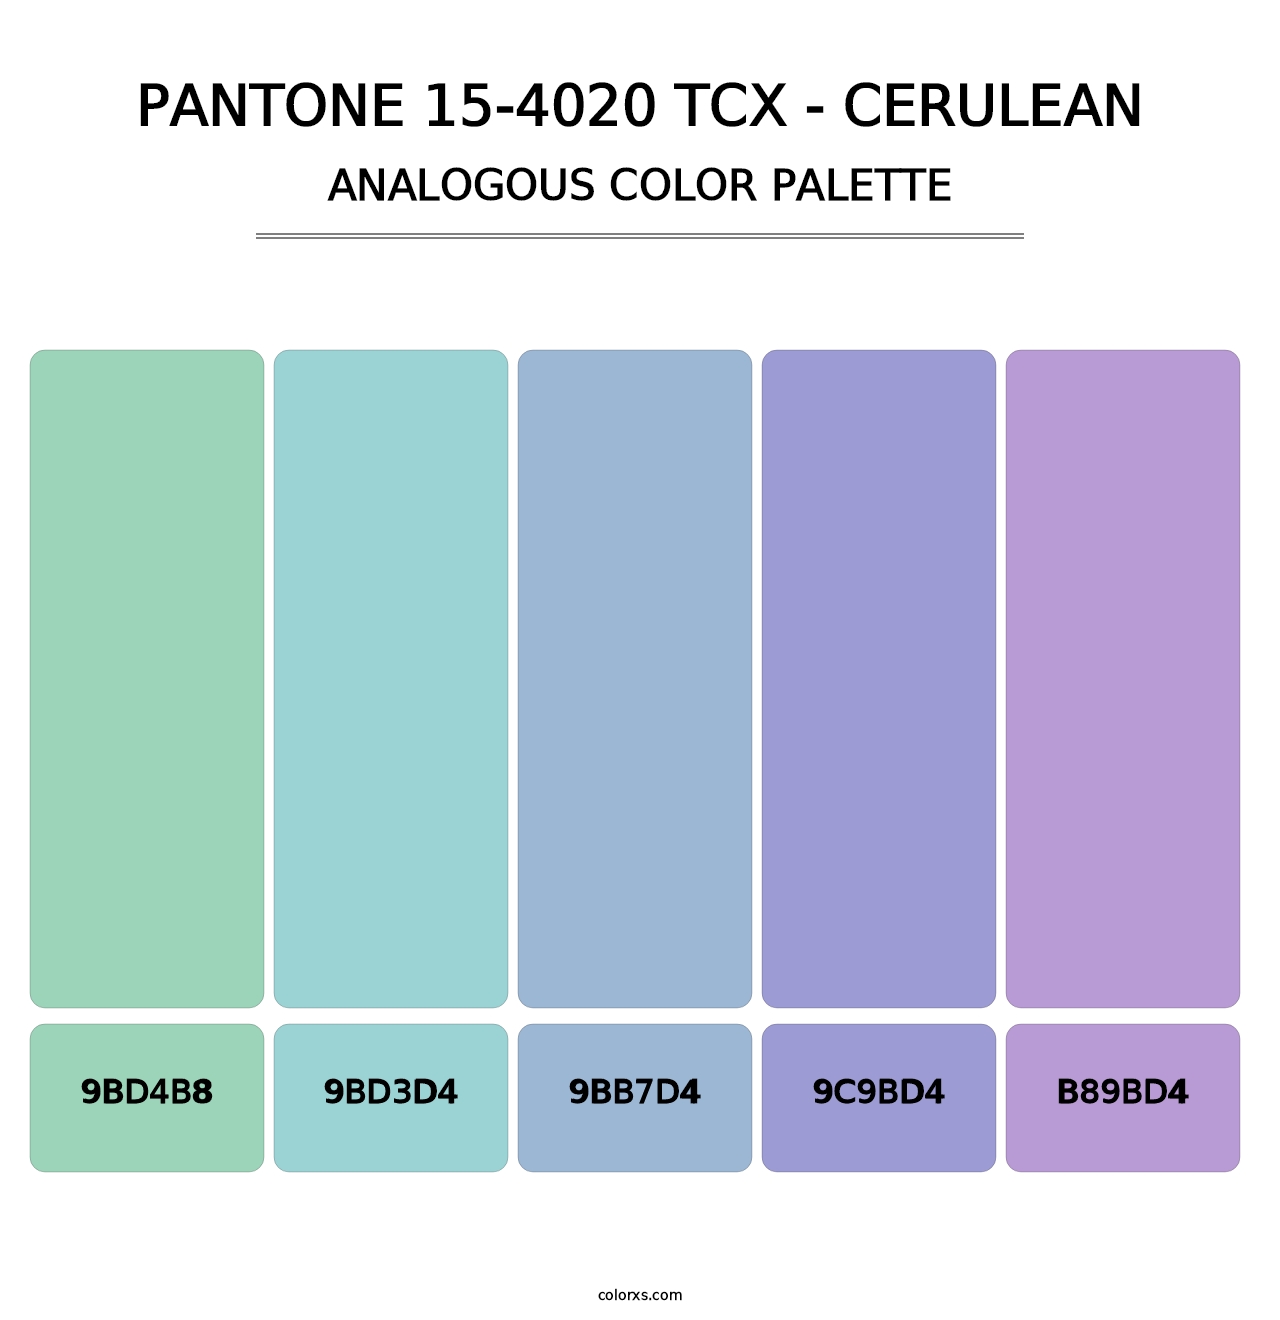 PANTONE 15-4020 TCX - Cerulean - Analogous Color Palette